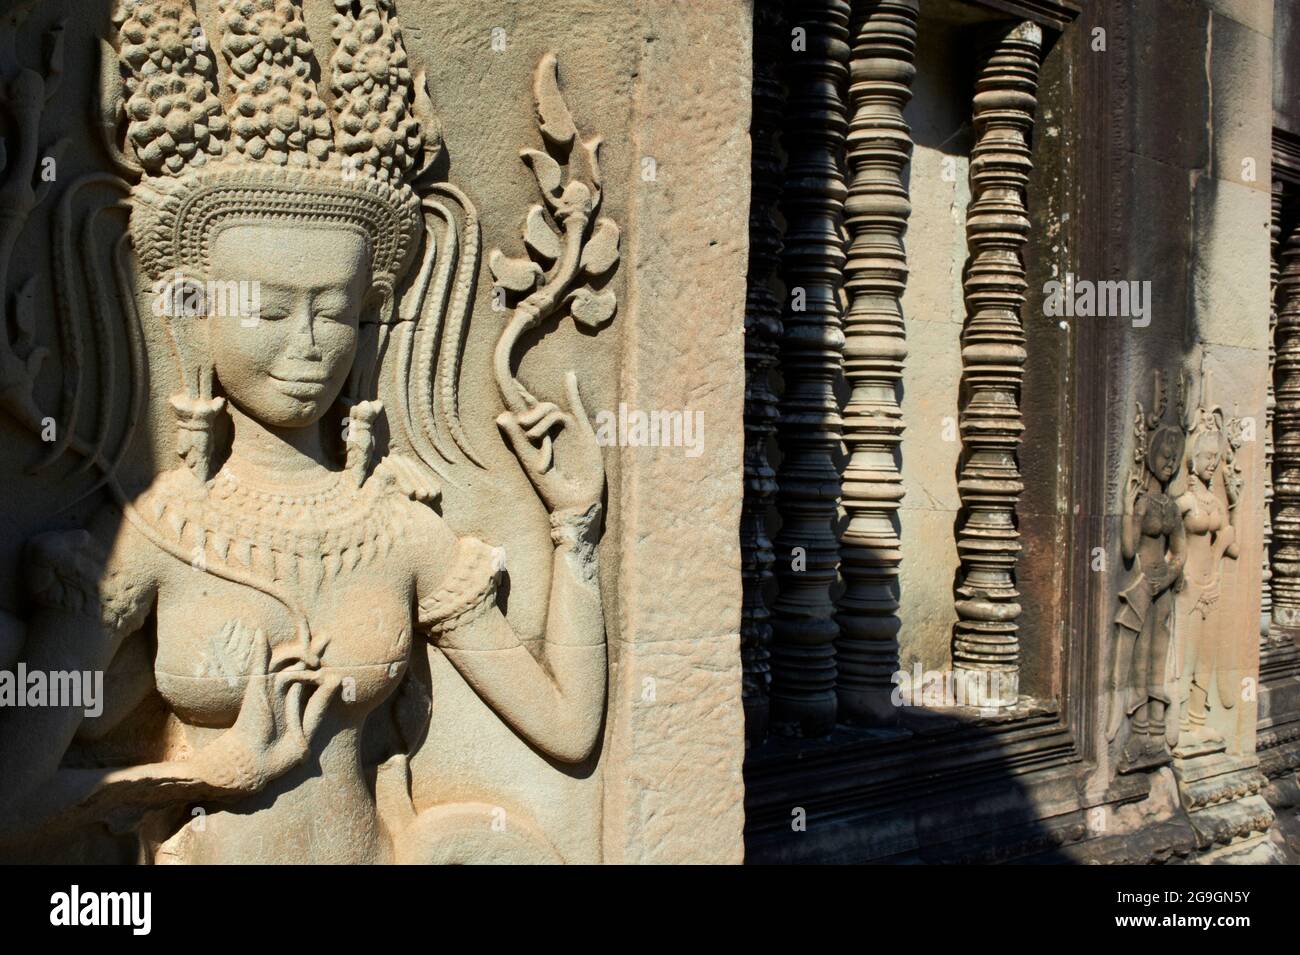 Sudeste de Asia, Camboya, provincia de Siem Reap, sitio de Angkor, patrimonio mundial de Unseco de la UNESCO desde 1992, templo de Angkor Wat (Angkor VAT), siglo XII, Foto de stock